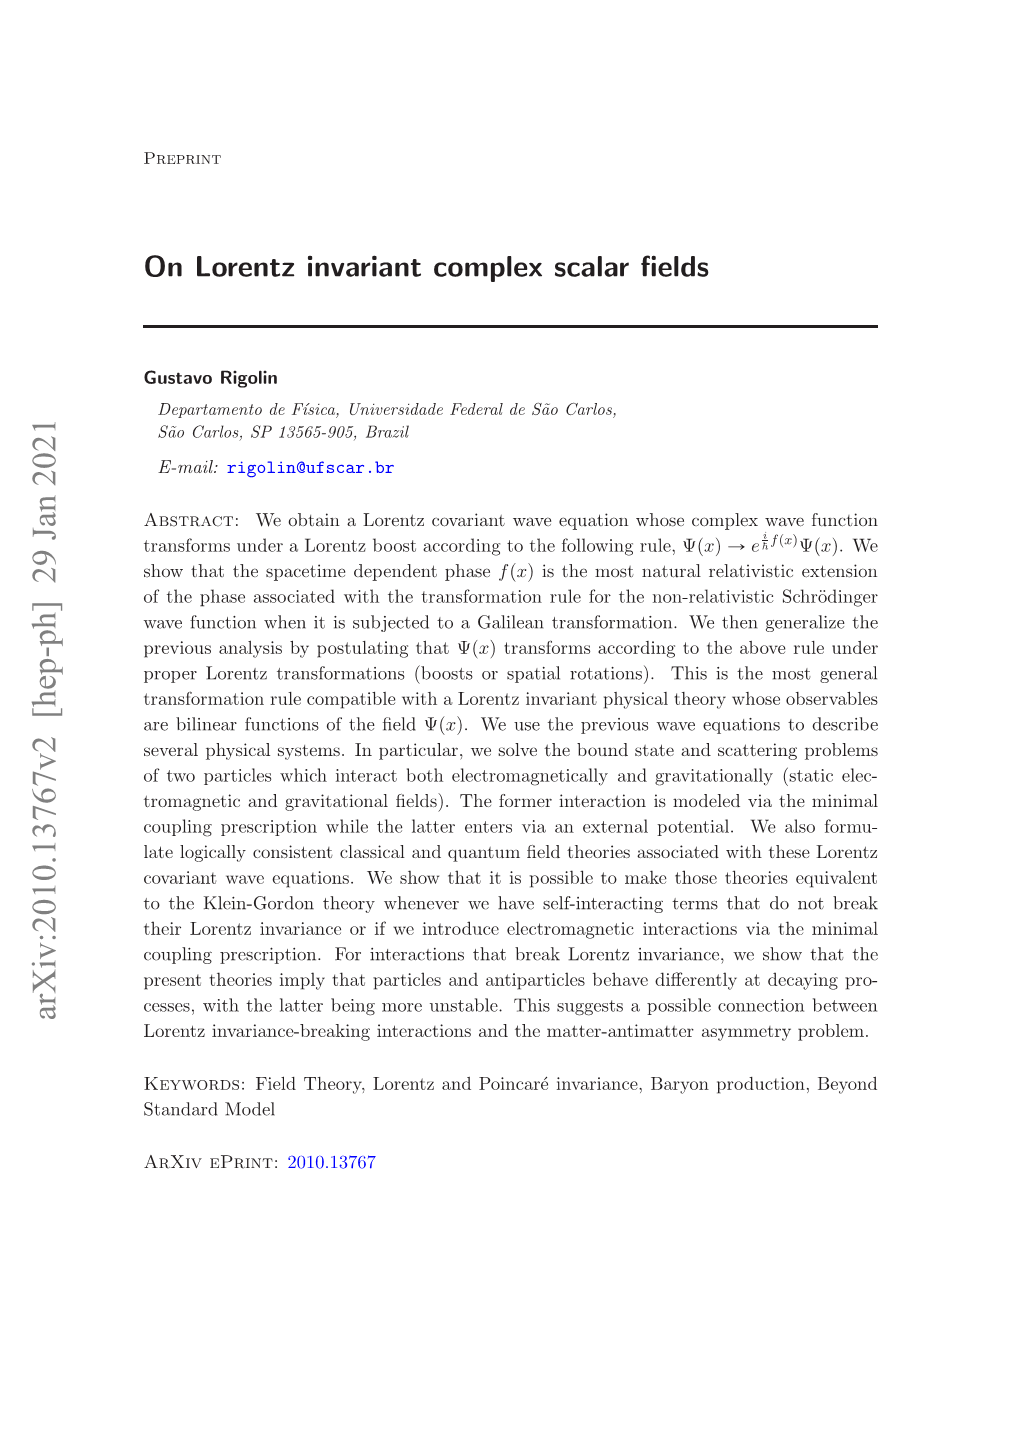 On Lorentz Invariant Complex Scalar Fields